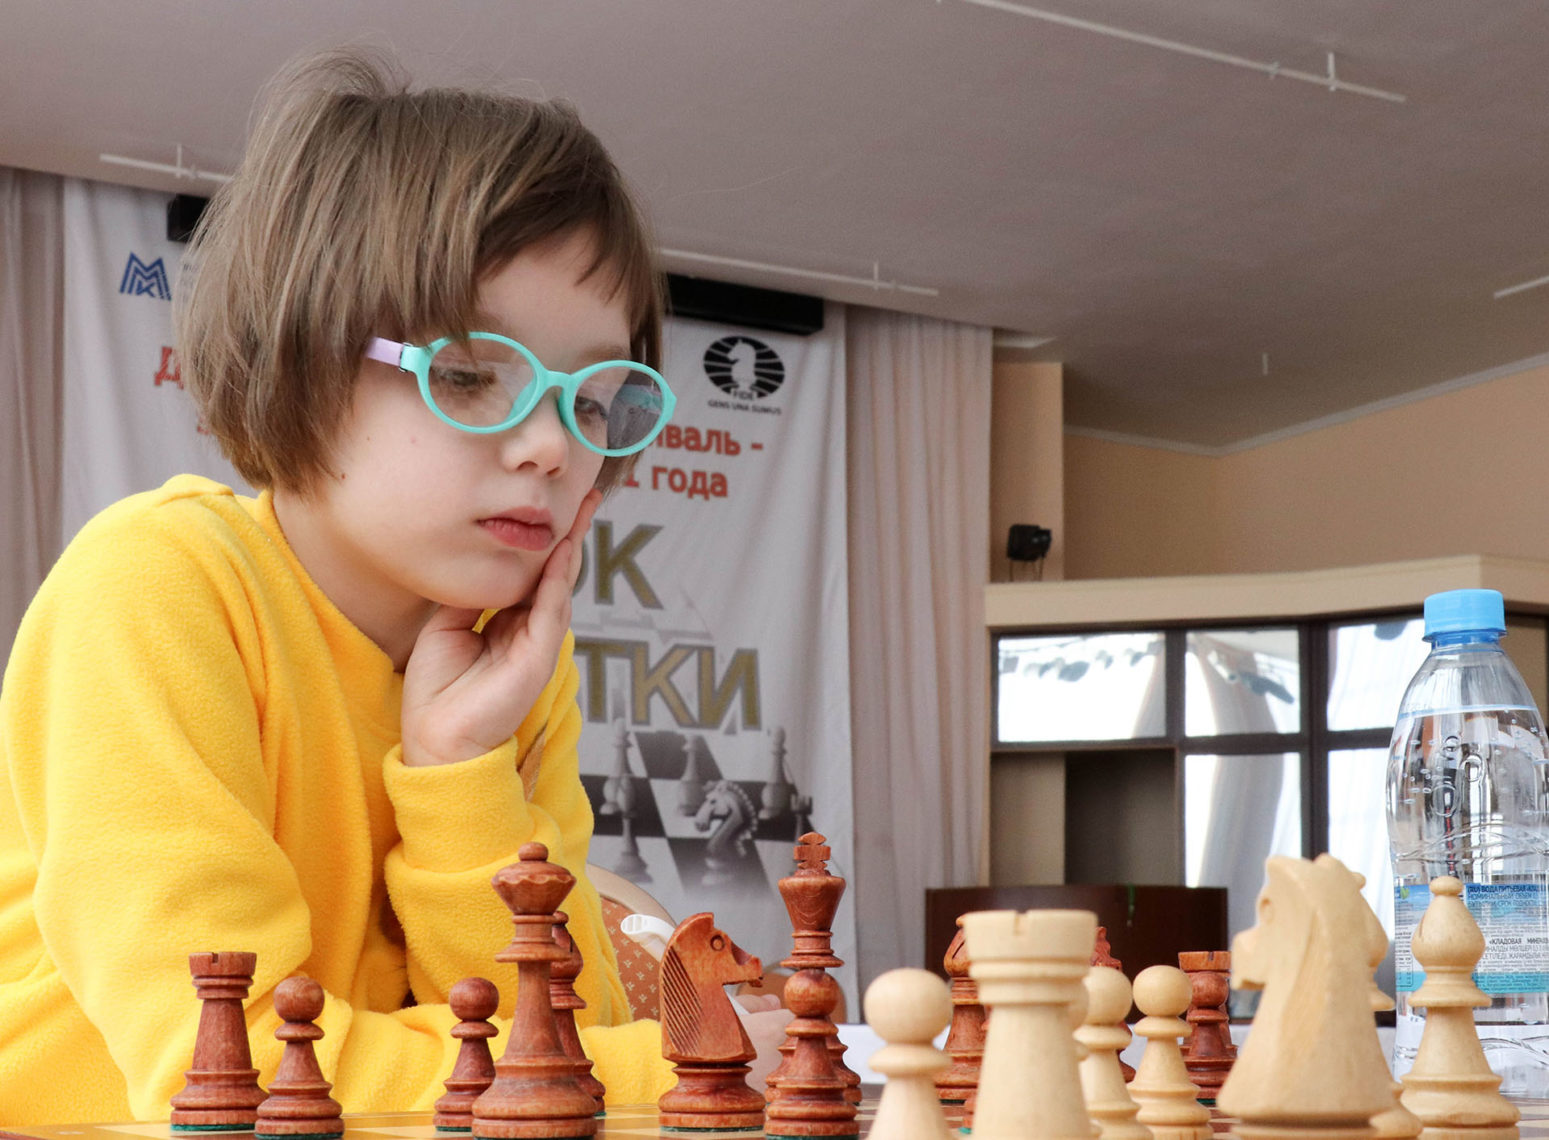 Неделя шахматных баталий. В Магнитогорске стартовал крупный турнир